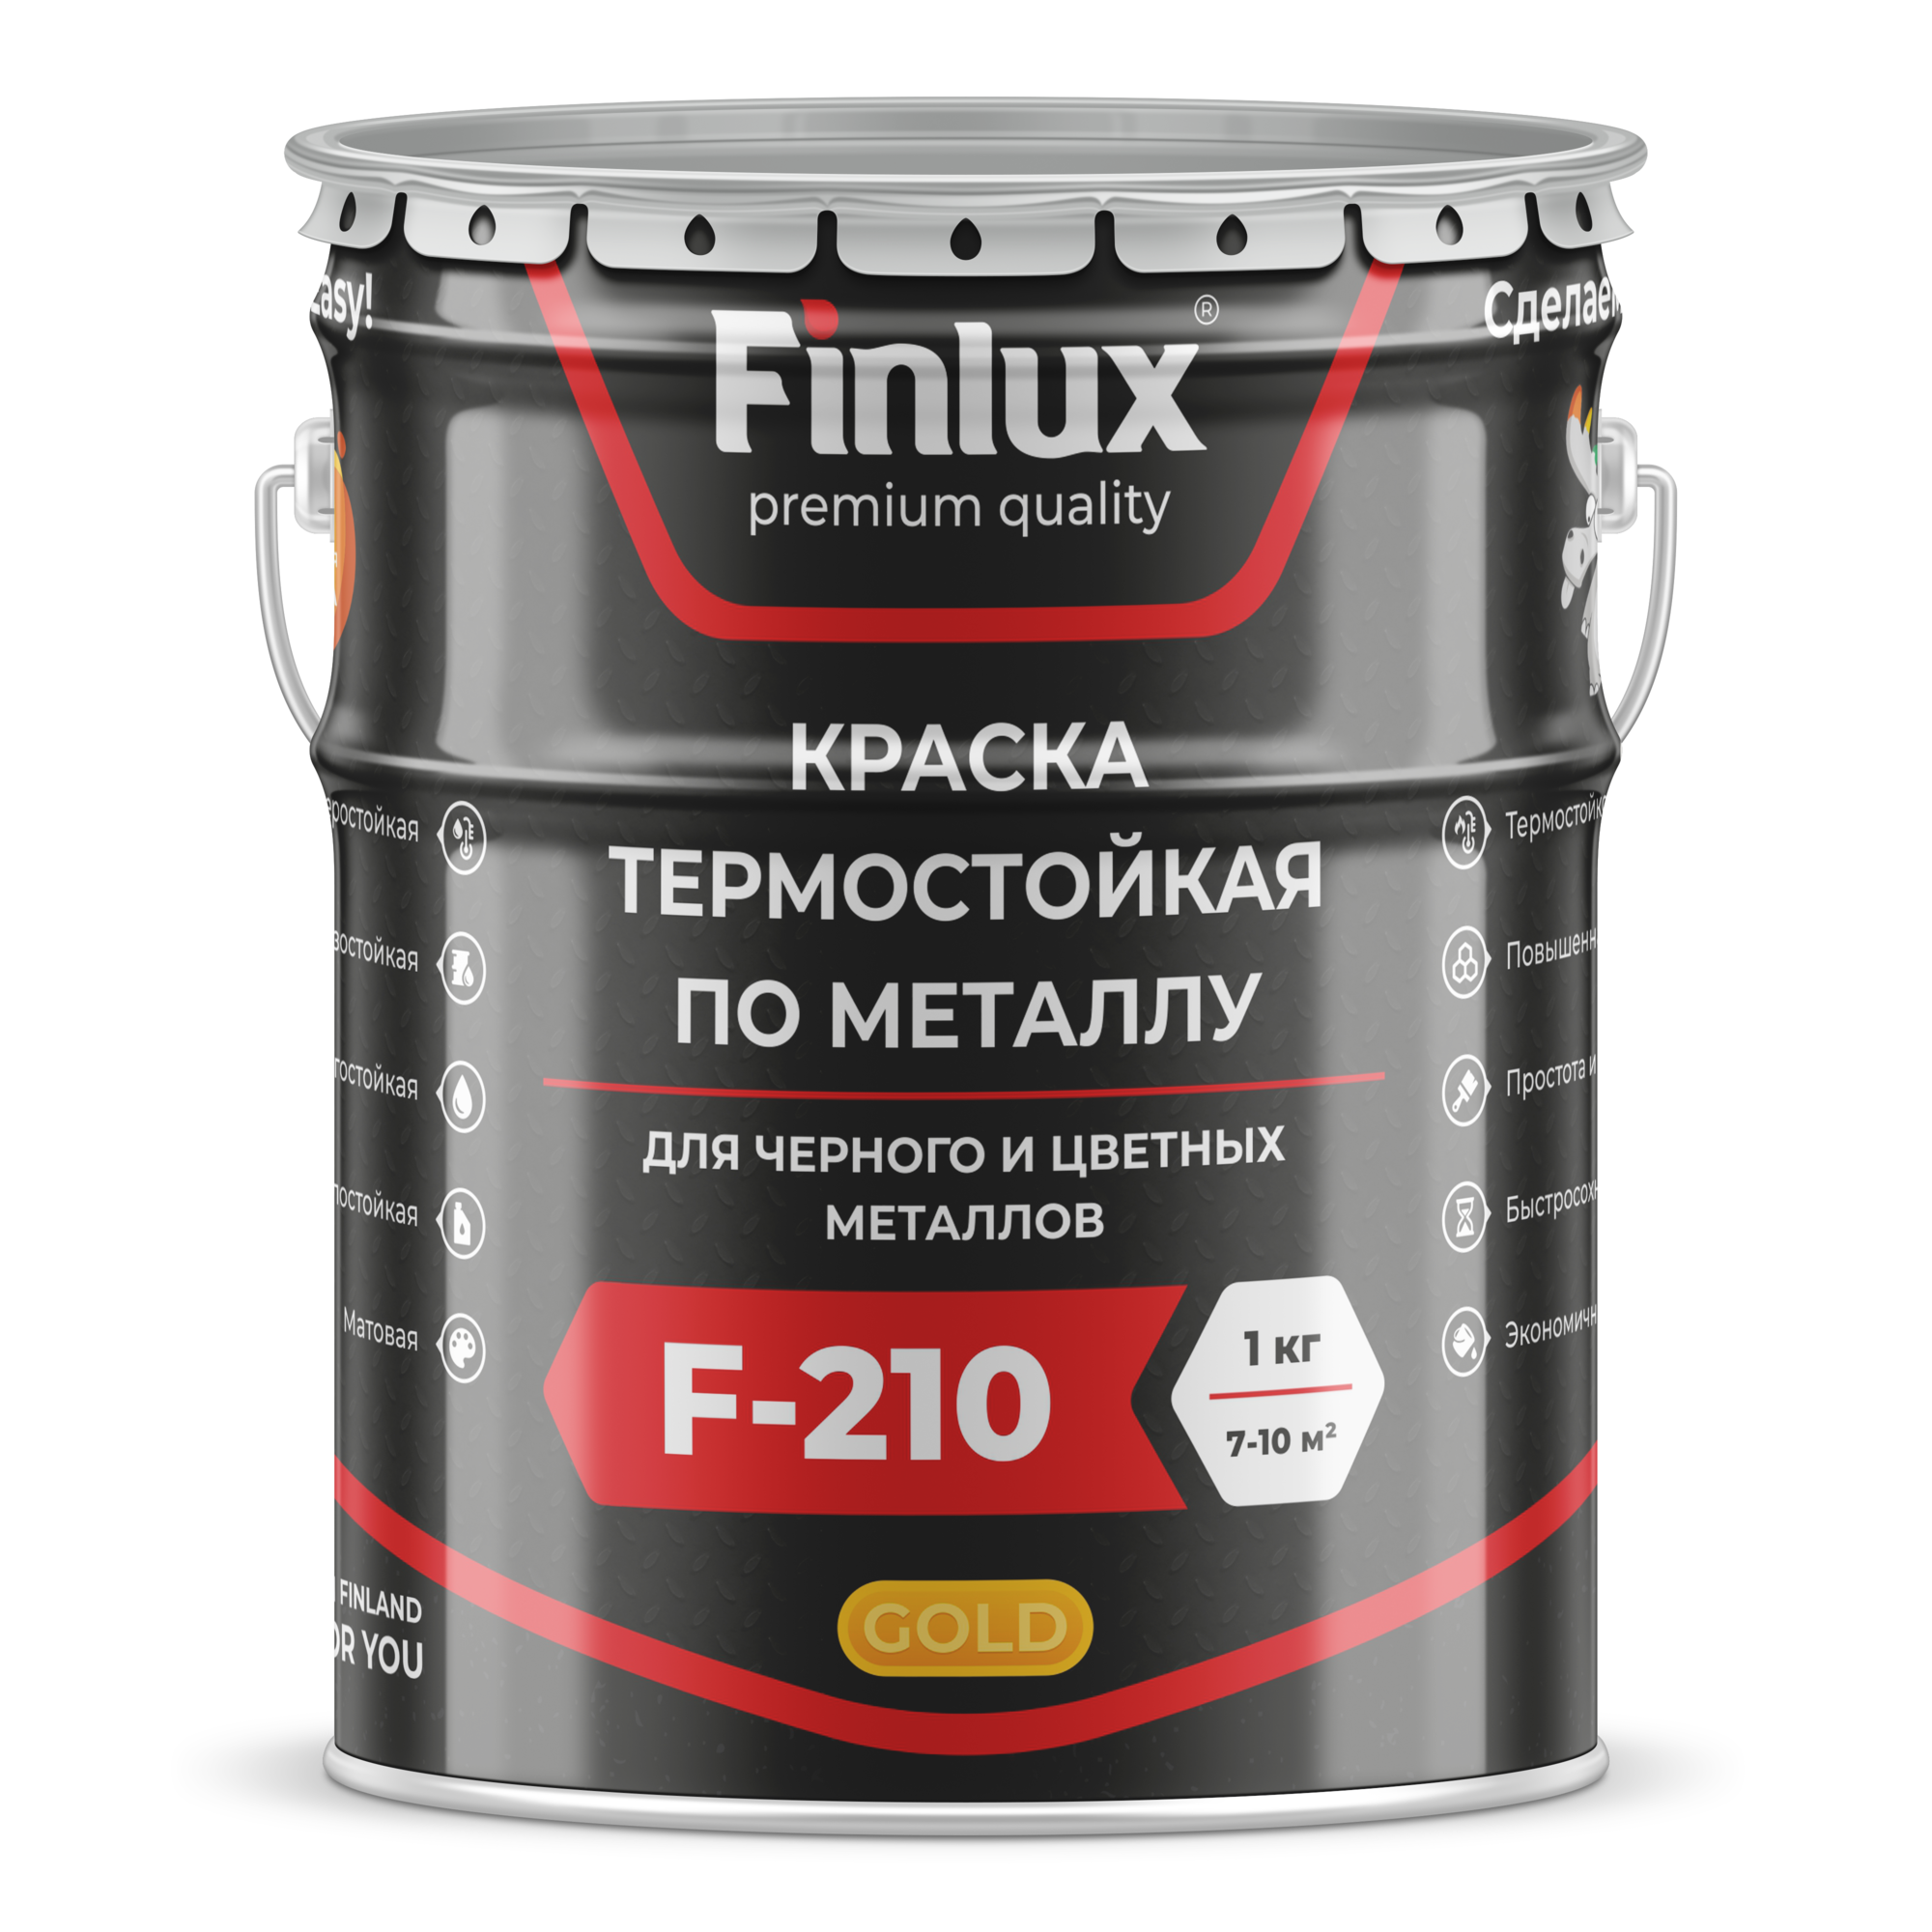 Краска термостойкая для металла Finlux ThermoStop F-210 Gold/ Финлюкс ТермоСтоп Ф-210 Голд ral 7040, 10 кг